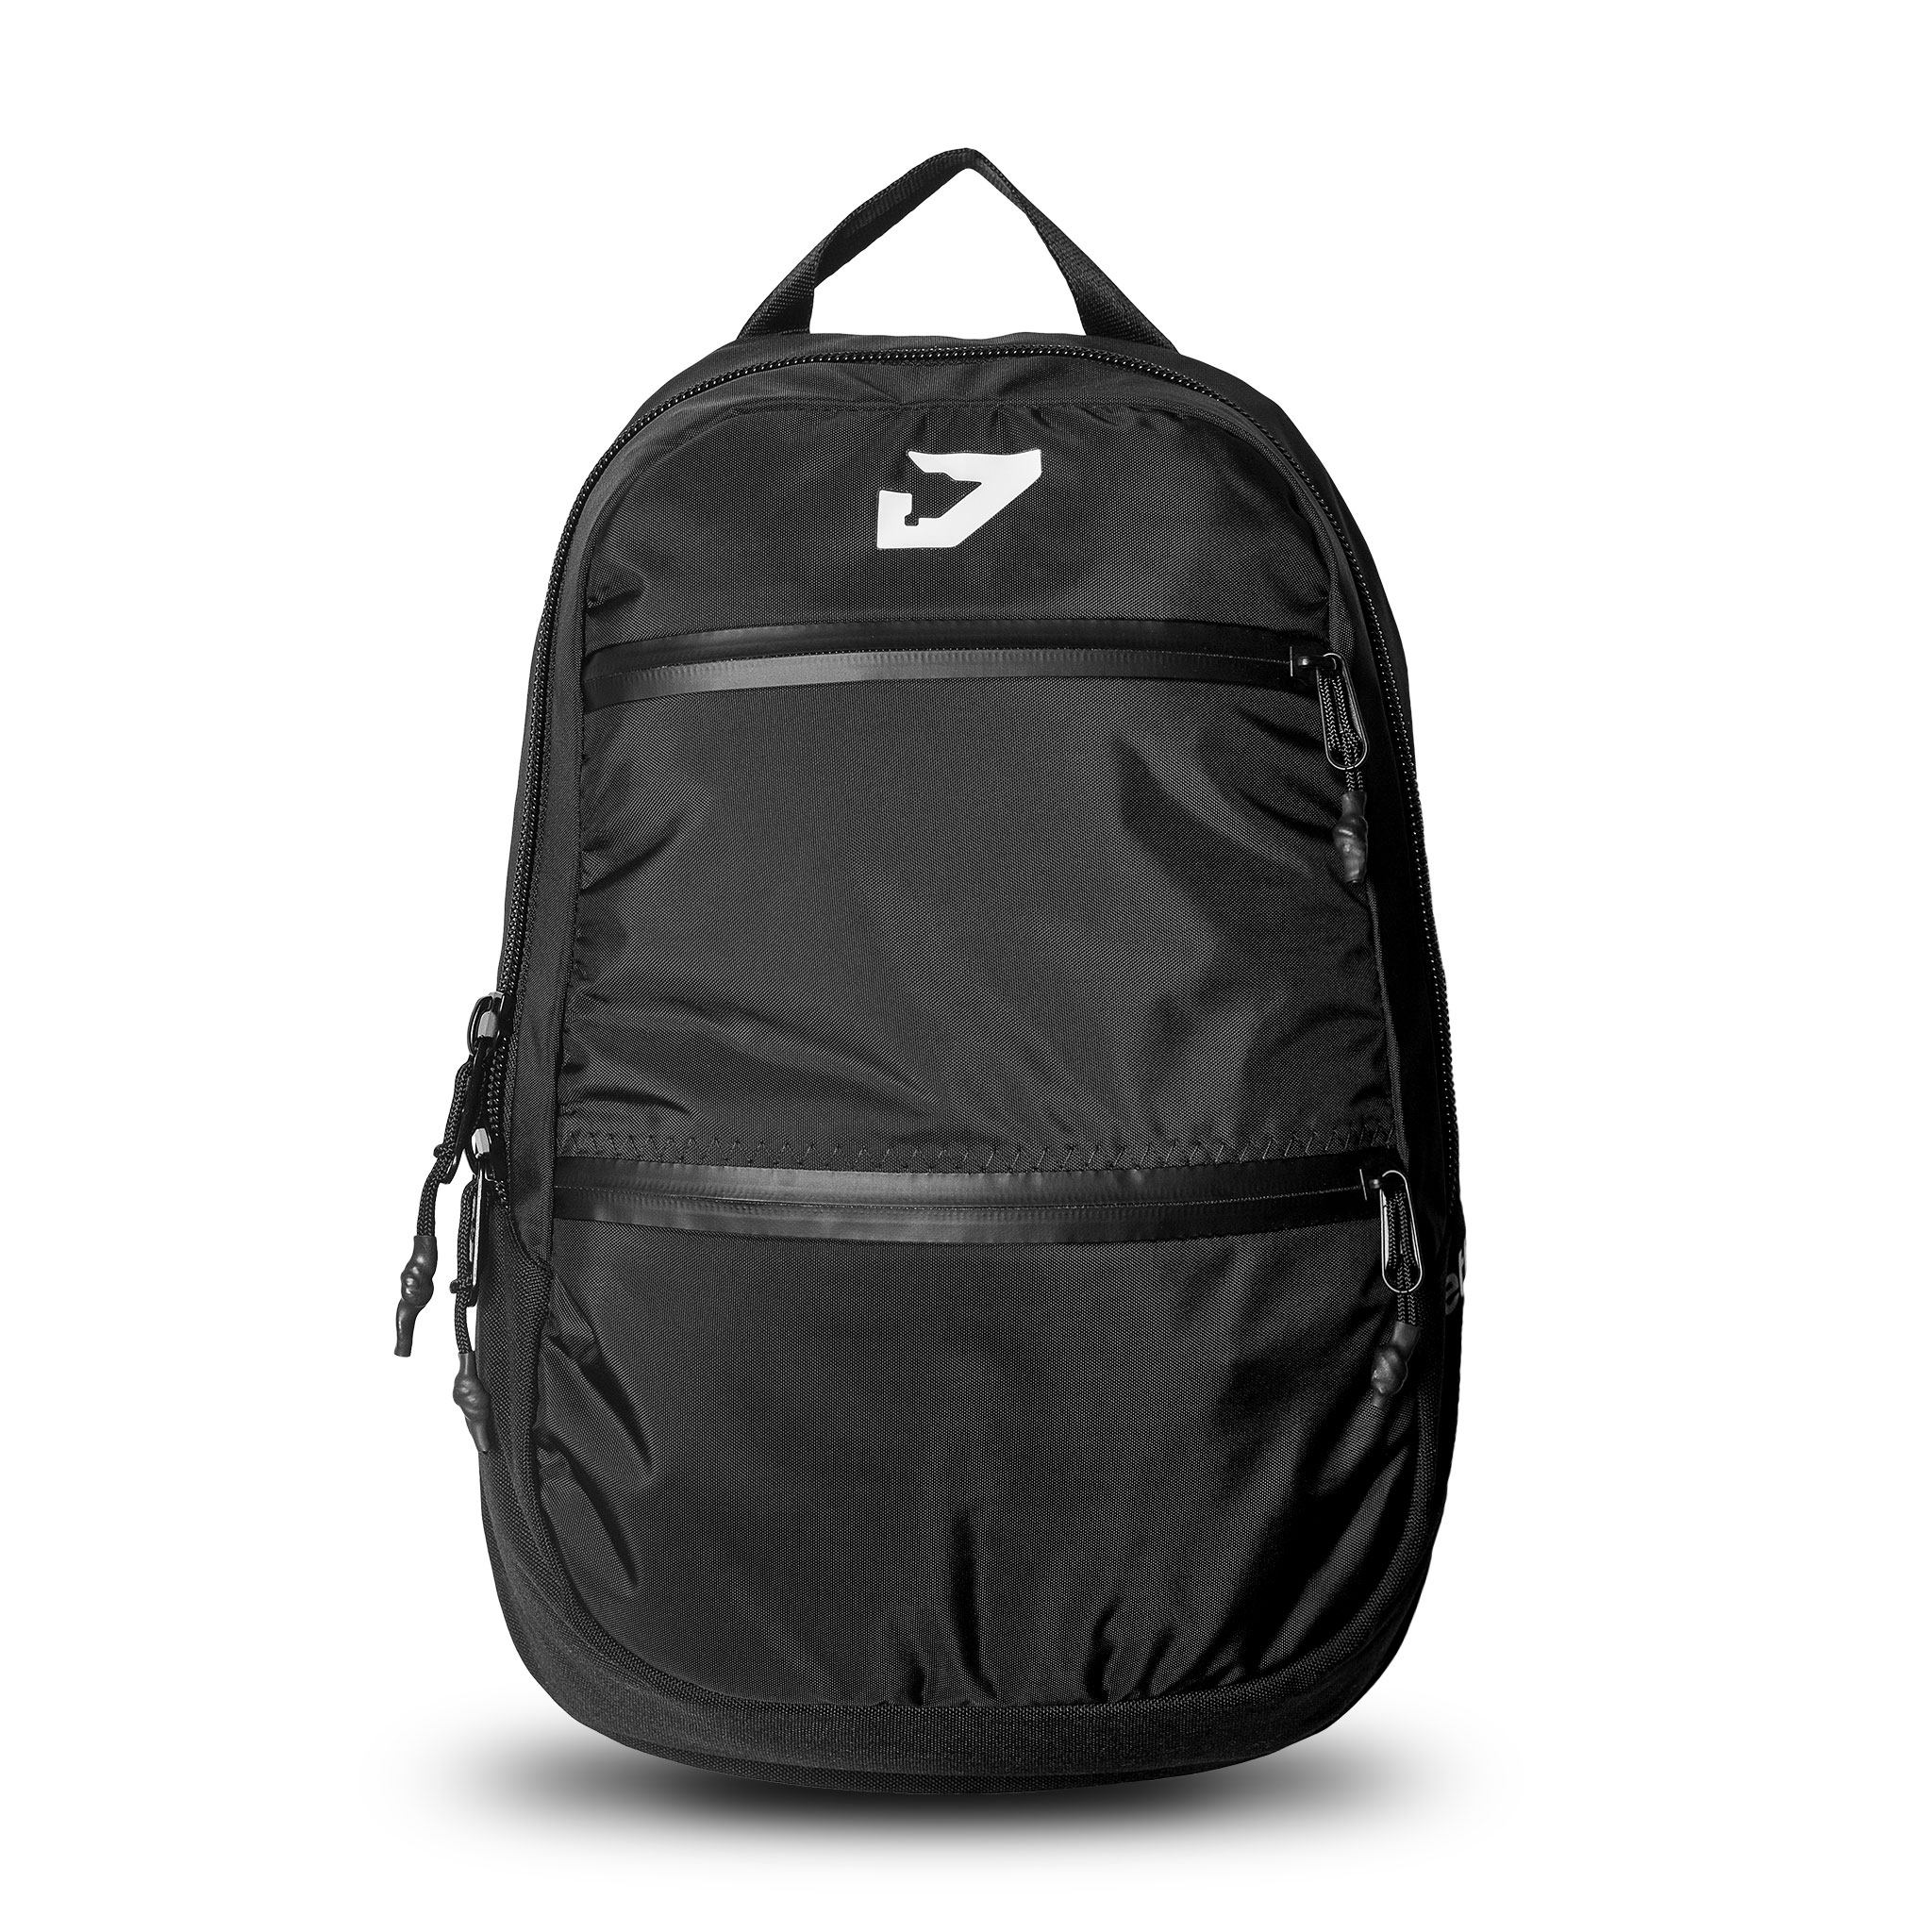 JETT PACK 15L backpack by Jettison Equipment